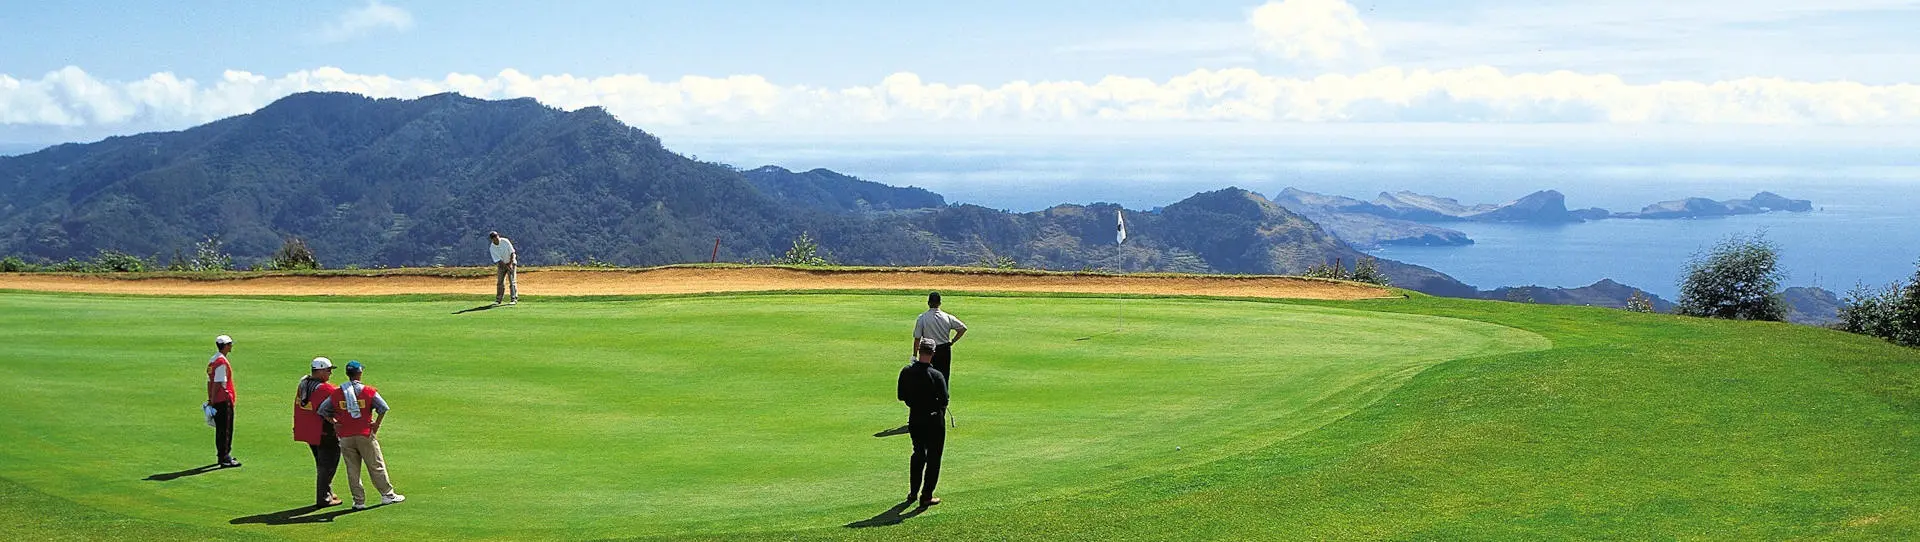 Portugal golf holidays - Santo da Serra Week Unlimited Golf - Photo 1